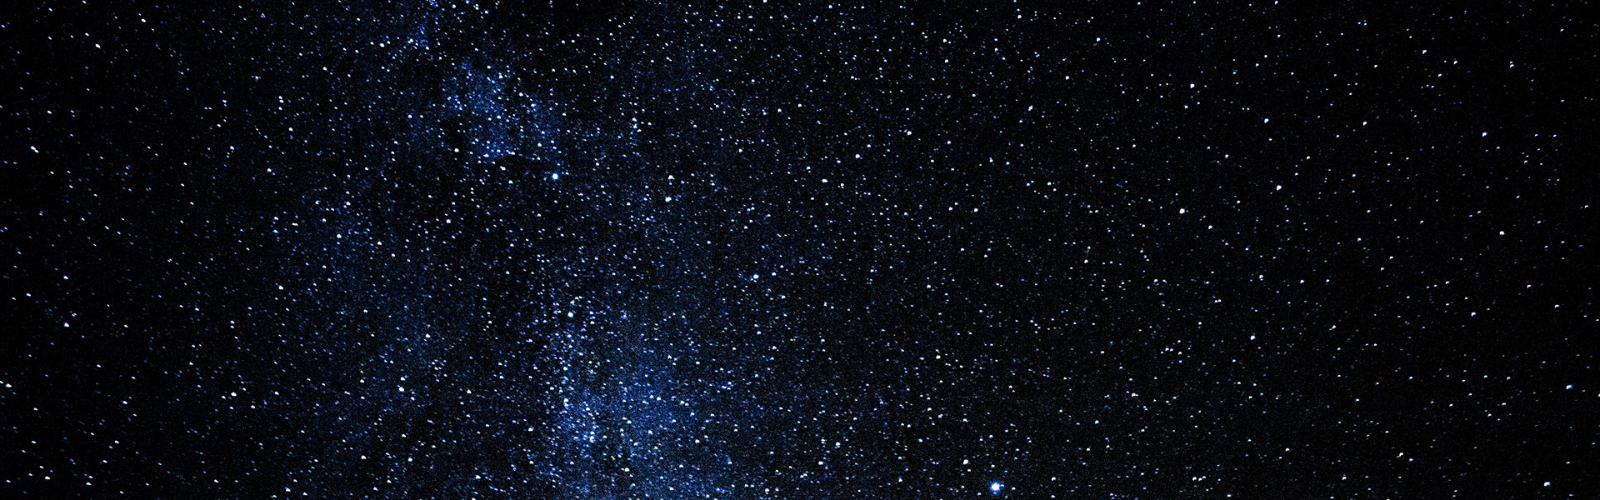 Lo que el descubrimiento de la estrella Eärendel nos enseña sobre los primeros instantes del universo